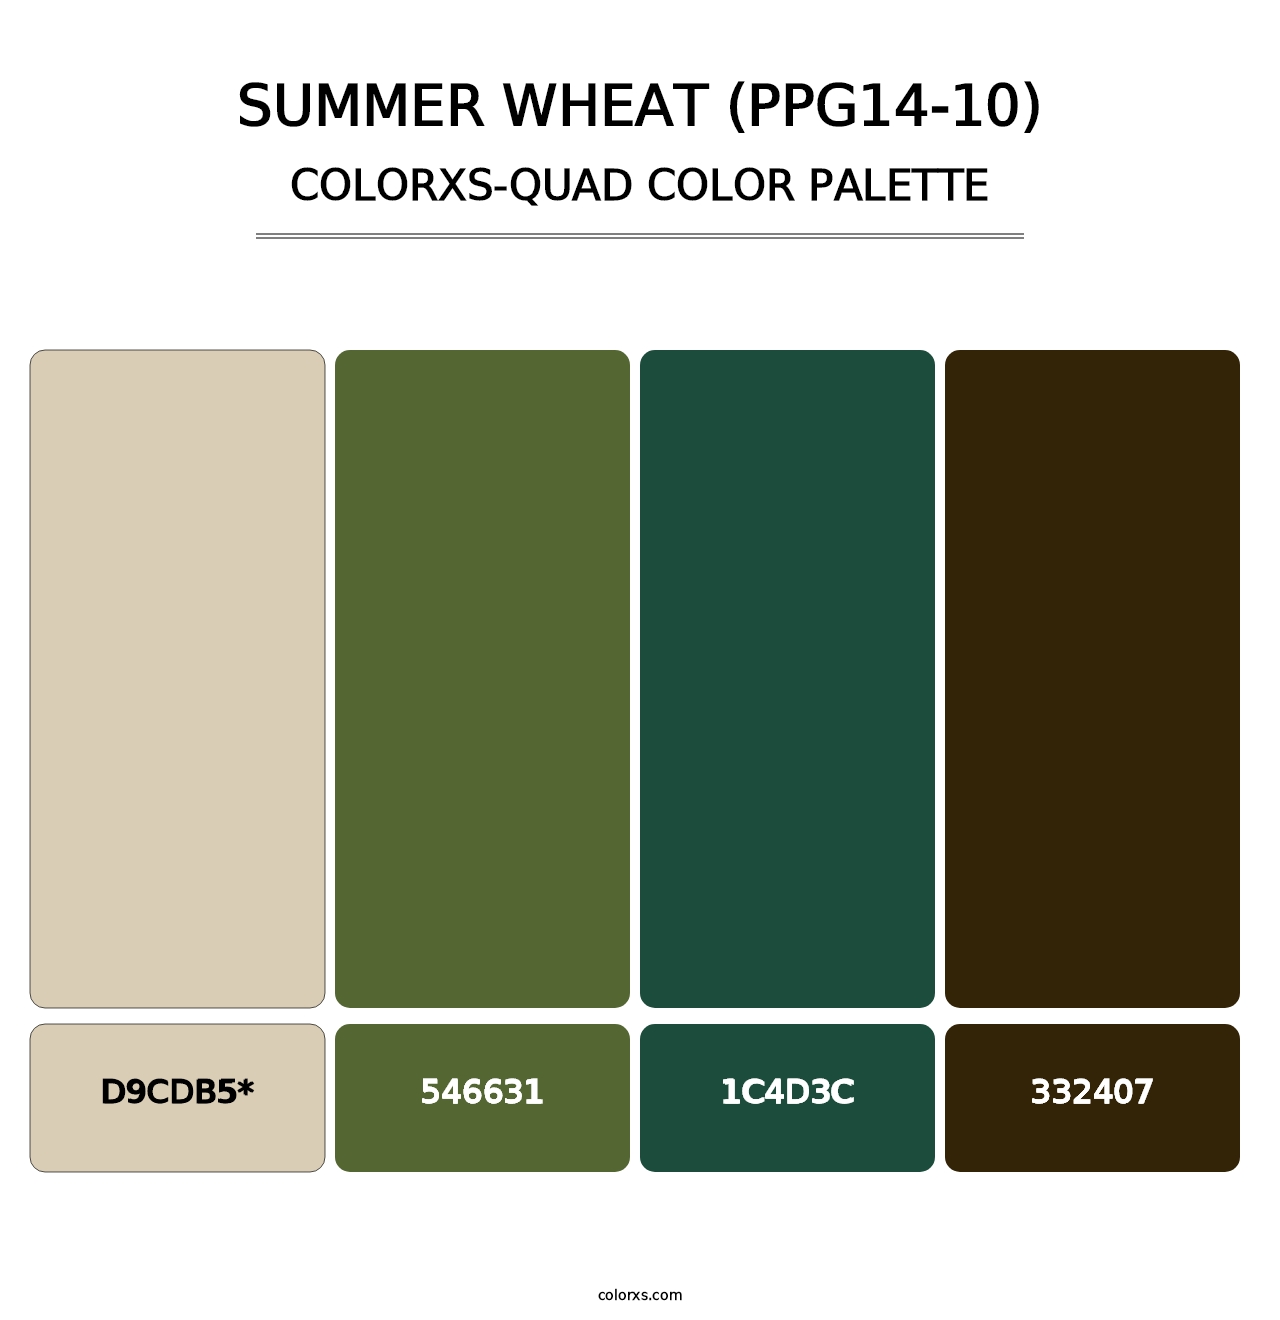 Summer Wheat (PPG14-10) - Colorxs Quad Palette